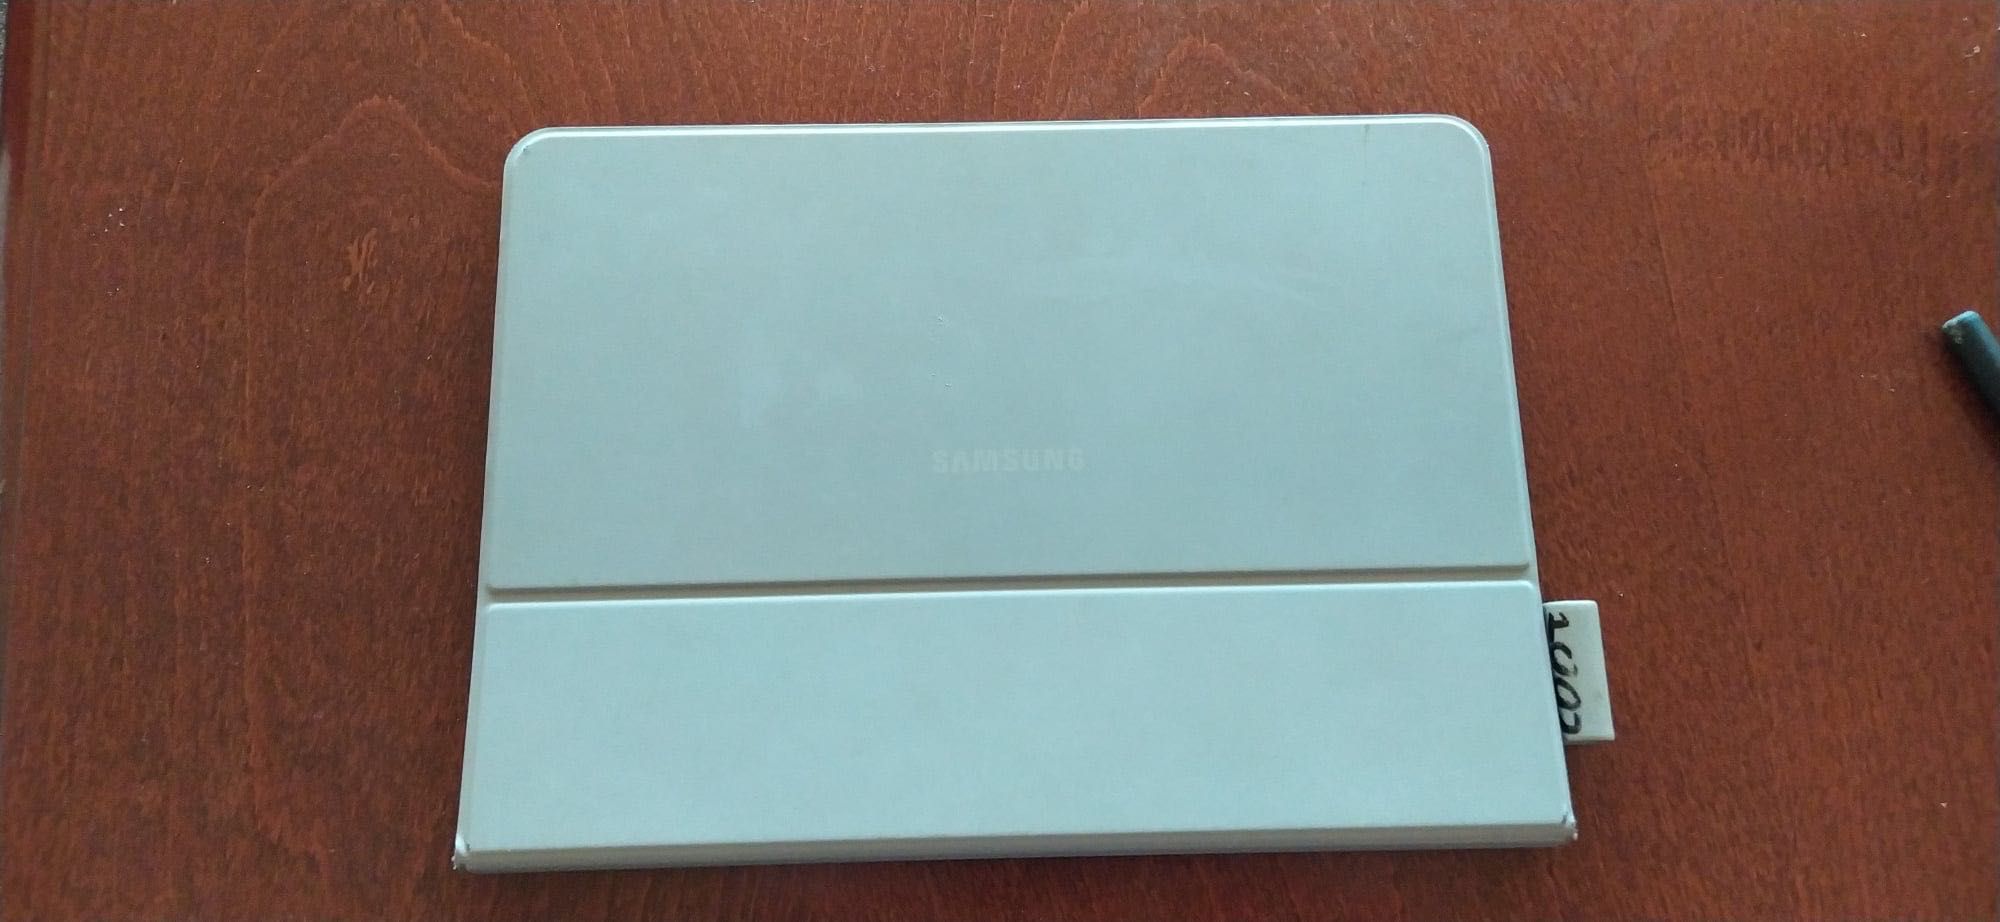 Samsung Galaxy TAB S3